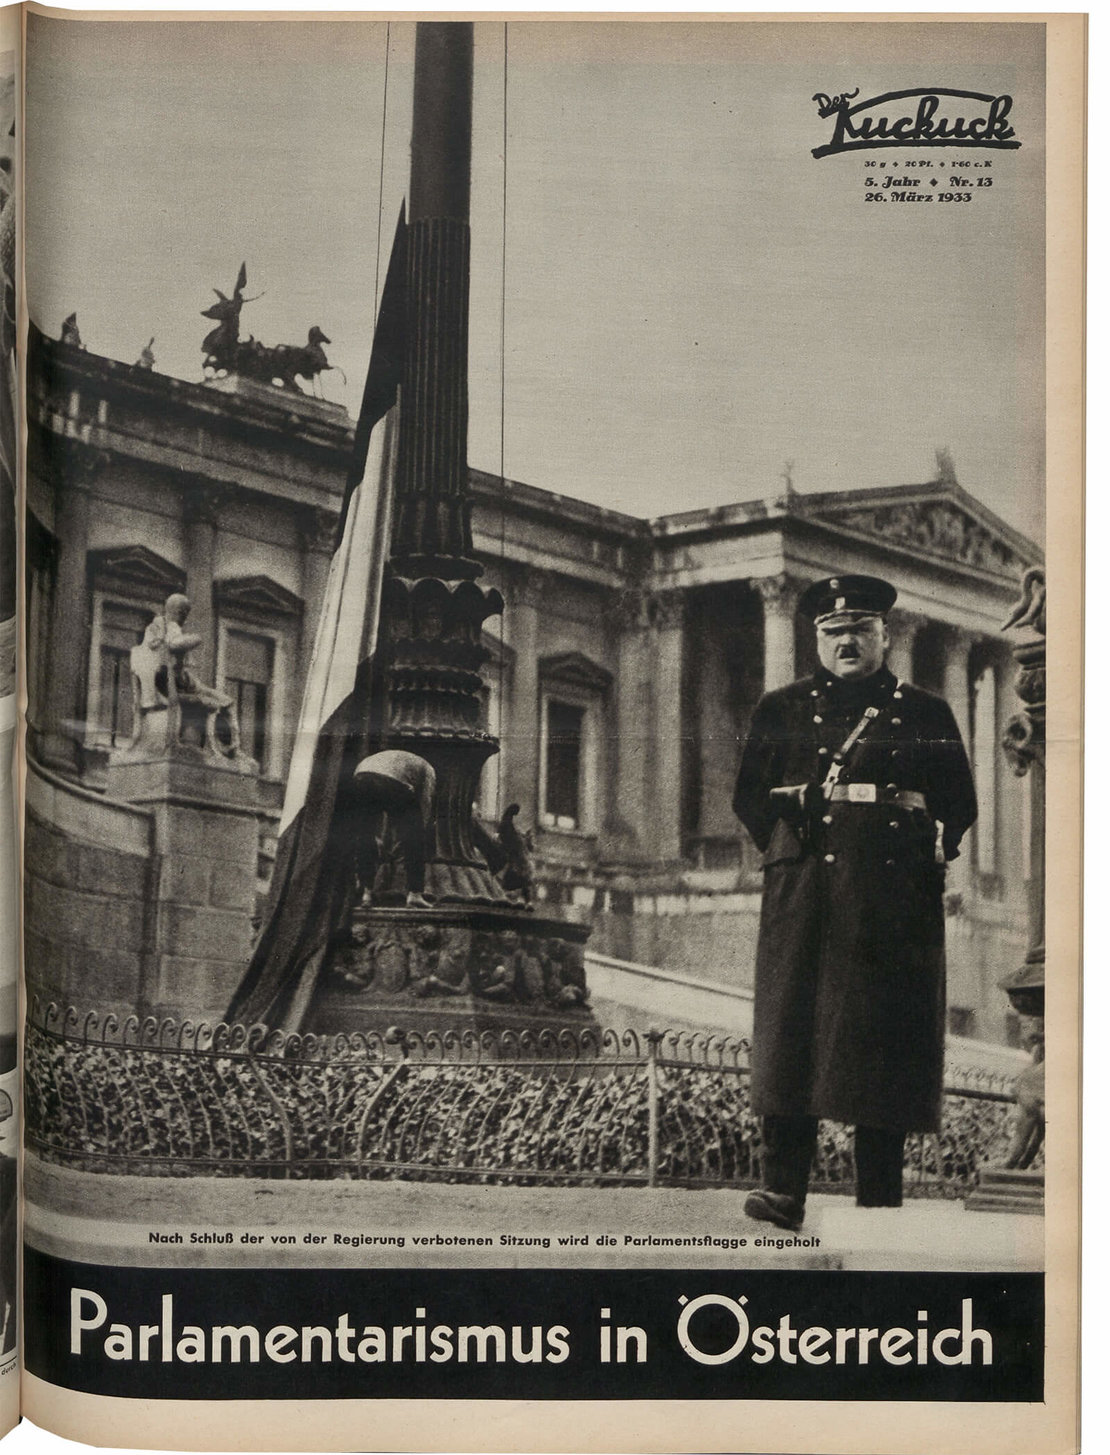 Titelblatt des „Kuckuck“ vom 26. März 1933: Ein Polizist steht vor dem abgeriegelten Parlamentsgebäude Wache. Foto: Albert Hilscher, Quelle ANNO/ÖNB 